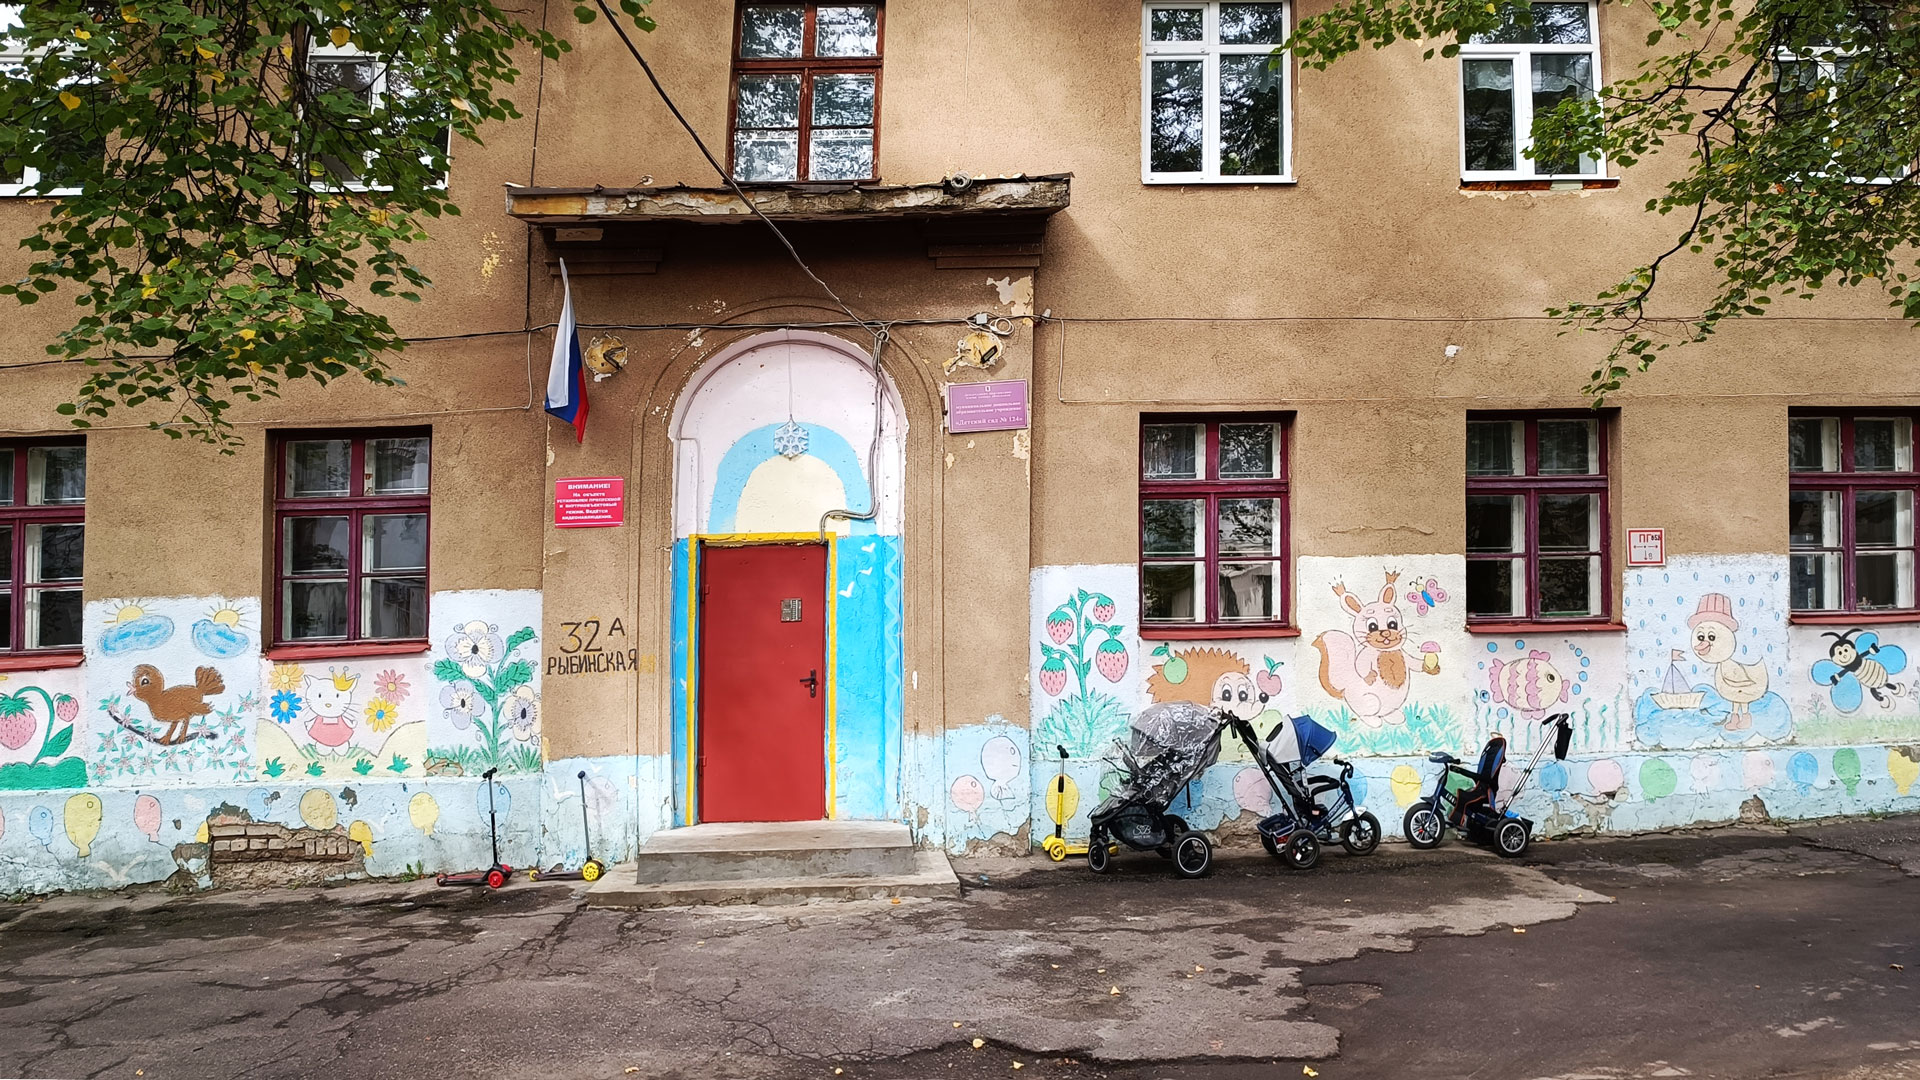 Детский сад 124 Ярославль: общий вид здания (Рыбинская, 32а).